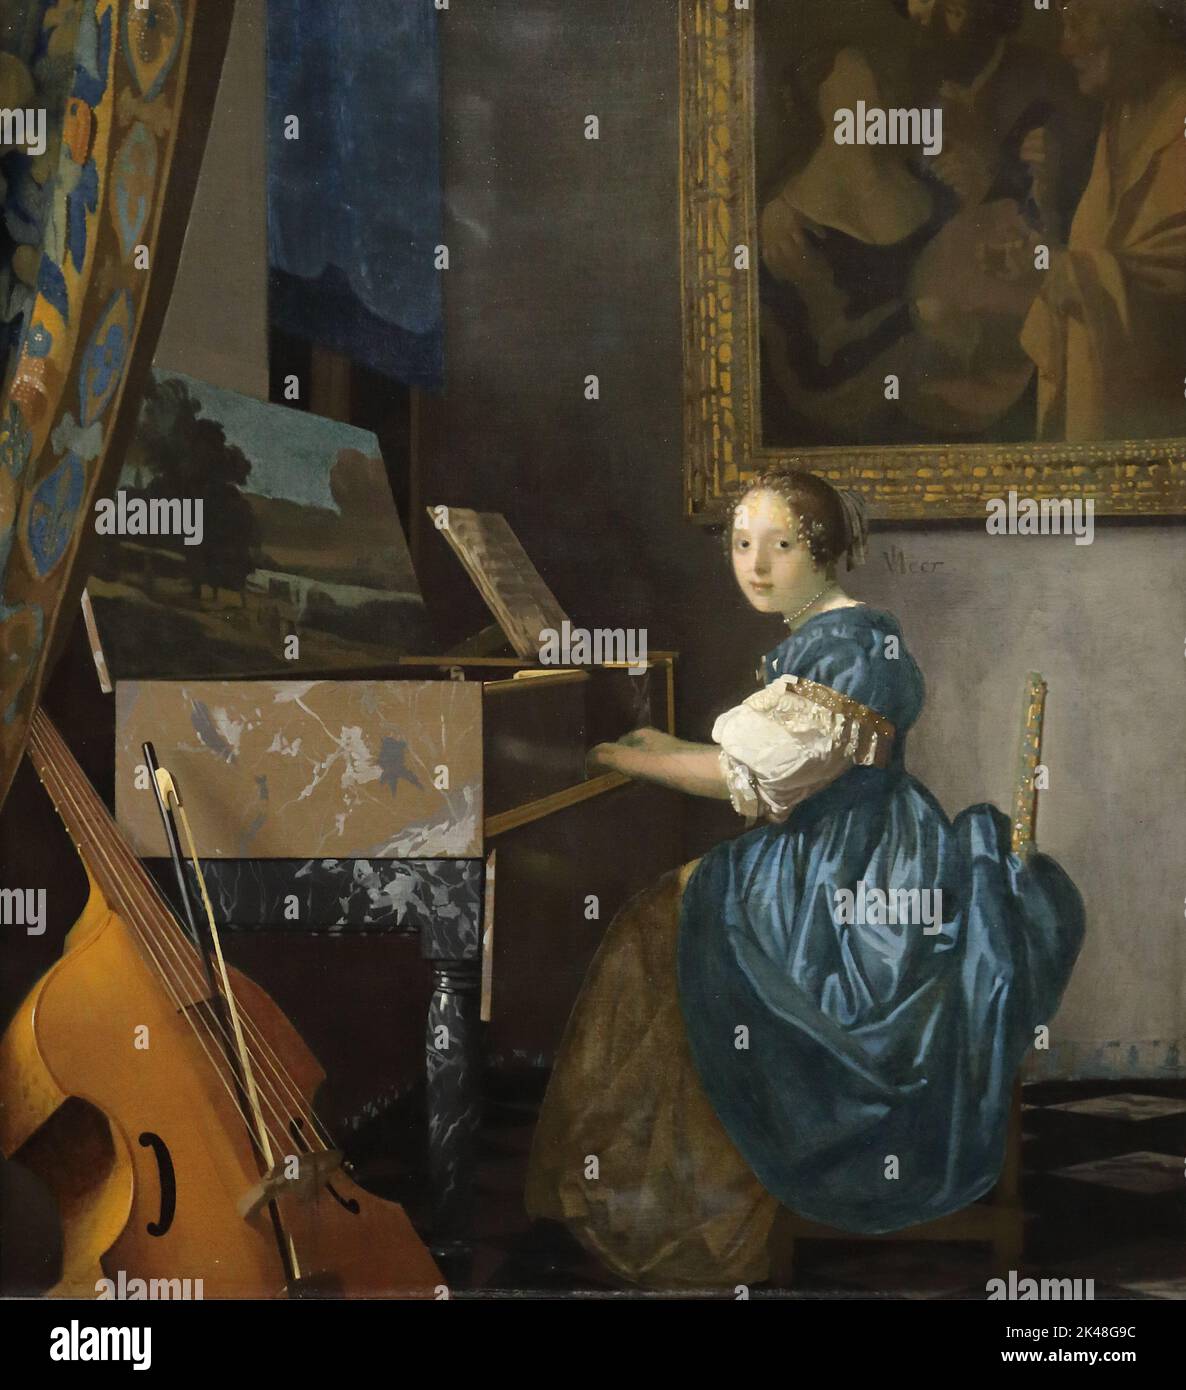 Lady sitzt an einem Jungfrauenjungen, auch bekannt als Junge Frau sitzt an einem Jungfrauenjungen, Gemälde des niederländischen Künstlers Johannes Vermeer in der National Gallery, London, Großbritannien Stockfoto